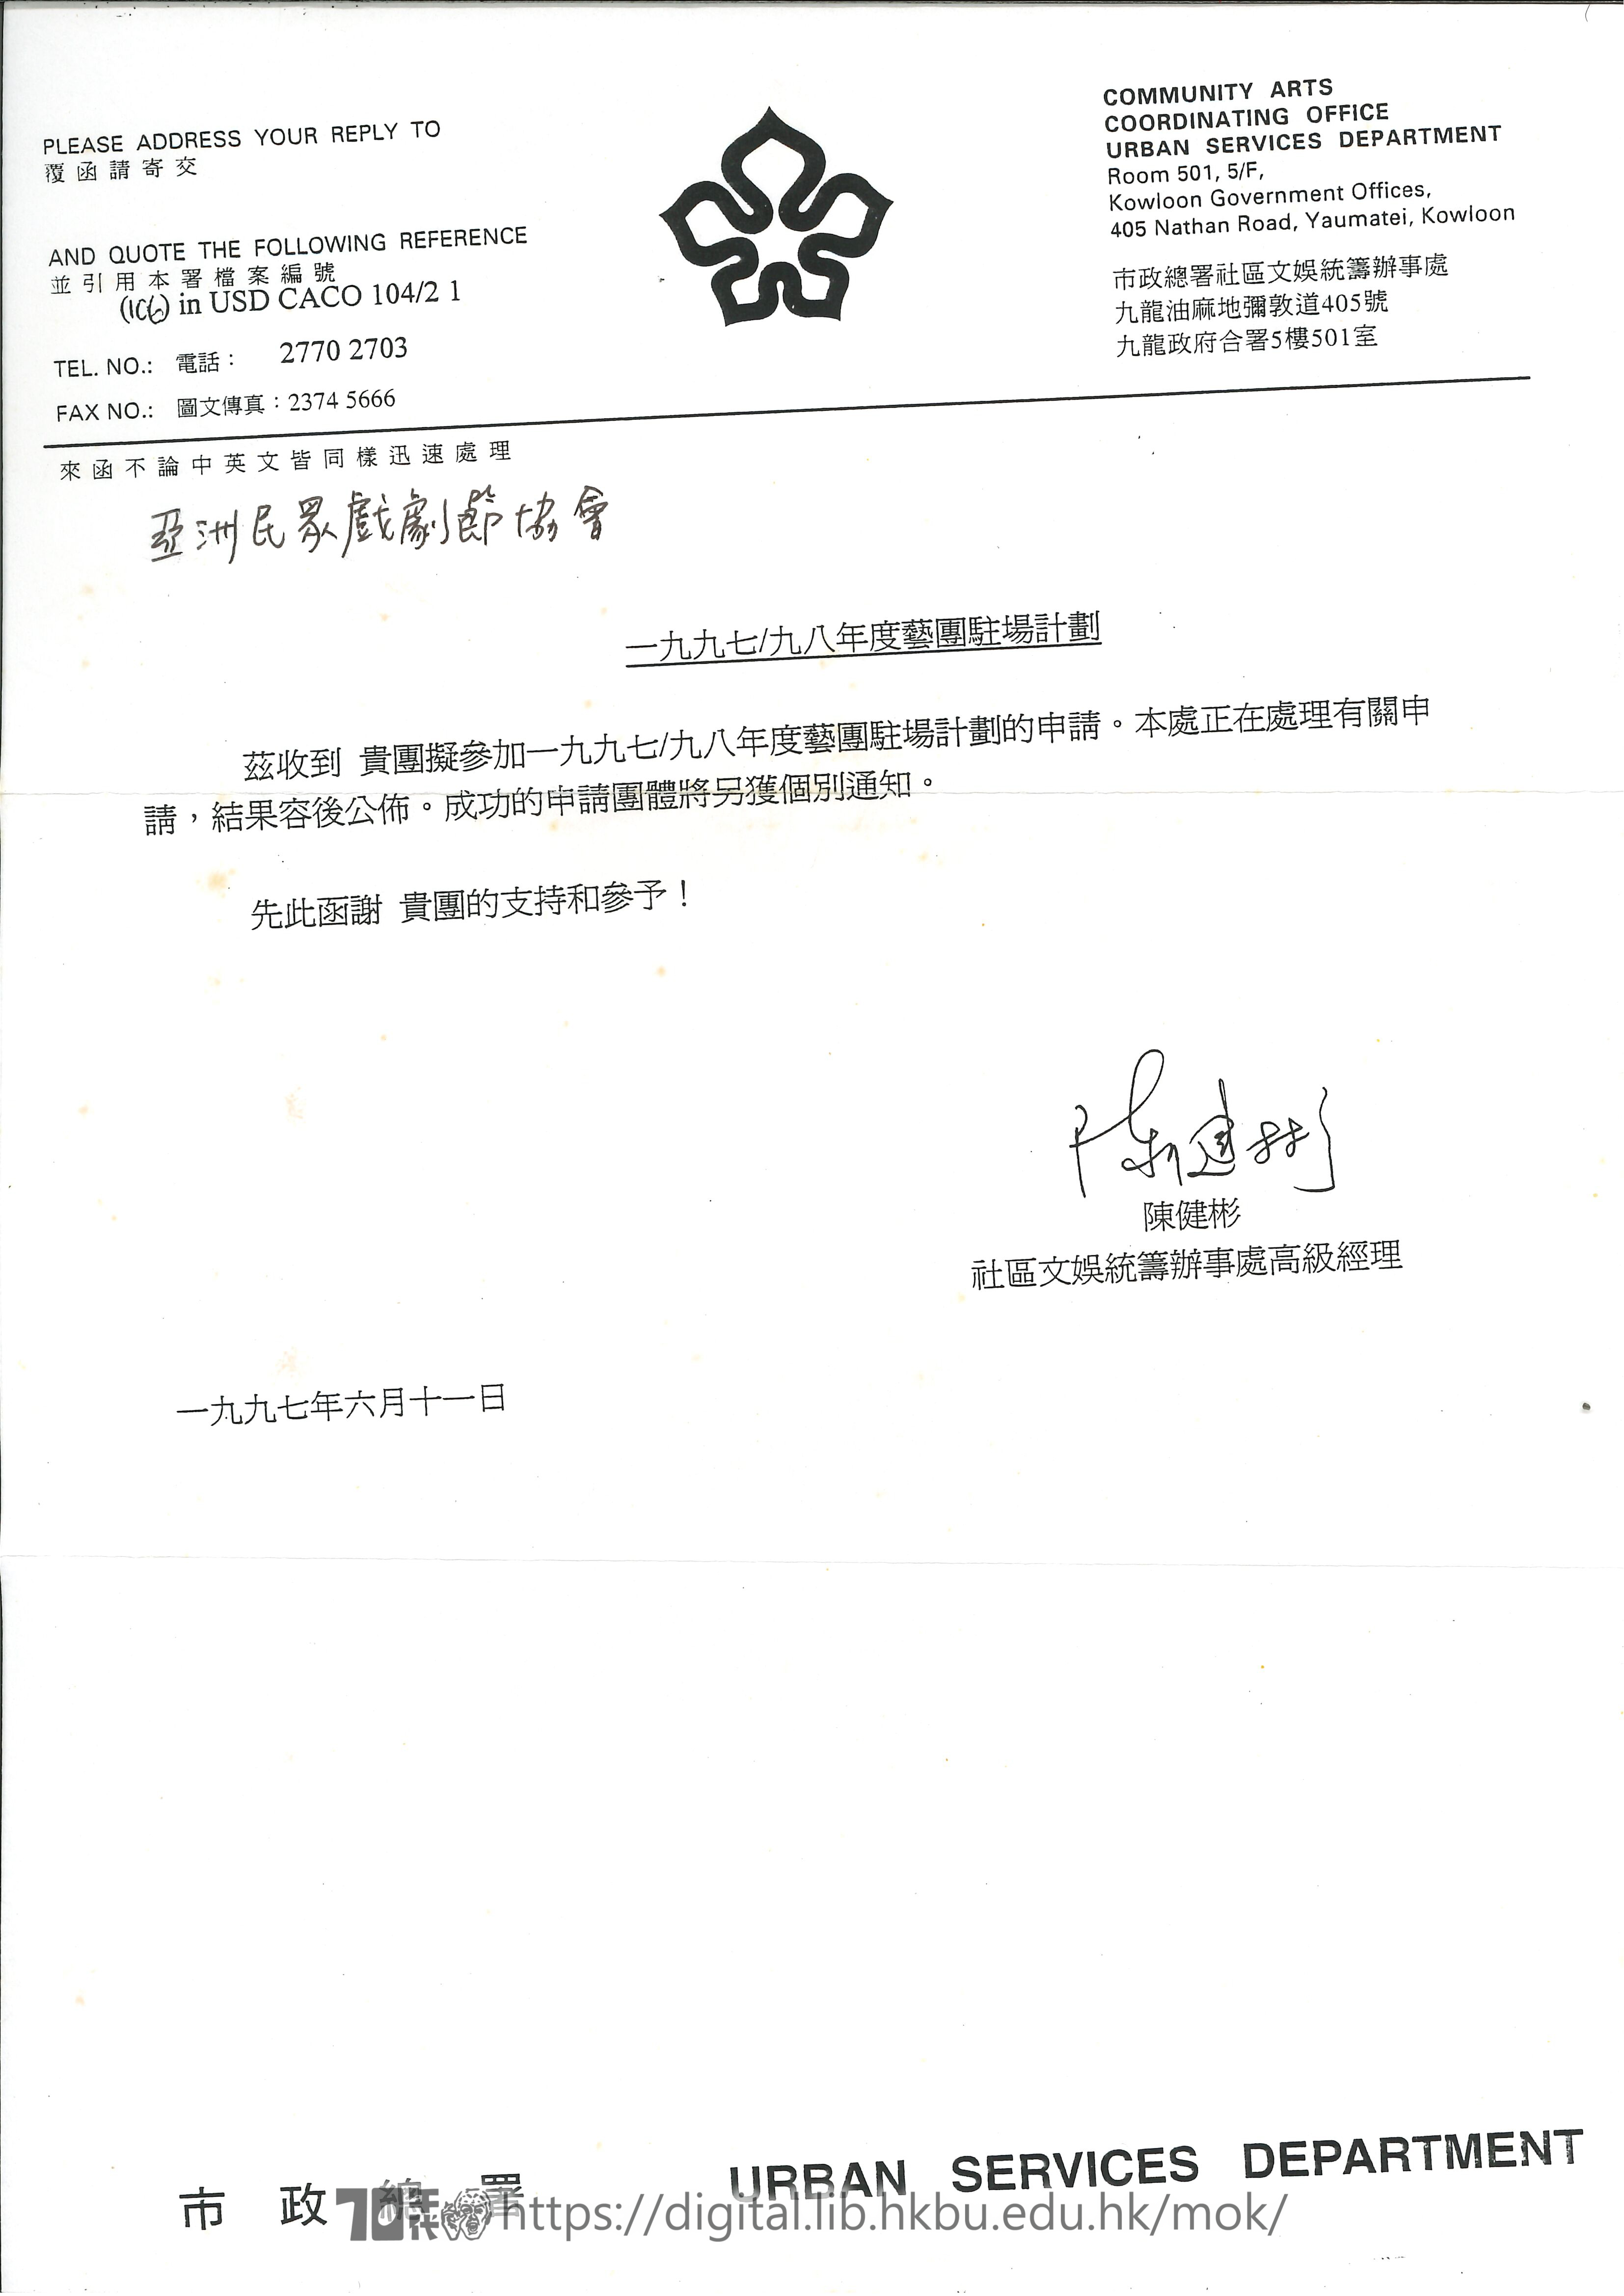 社區劇場  香港市政總署社區文娛統籌辦事處回復信函  